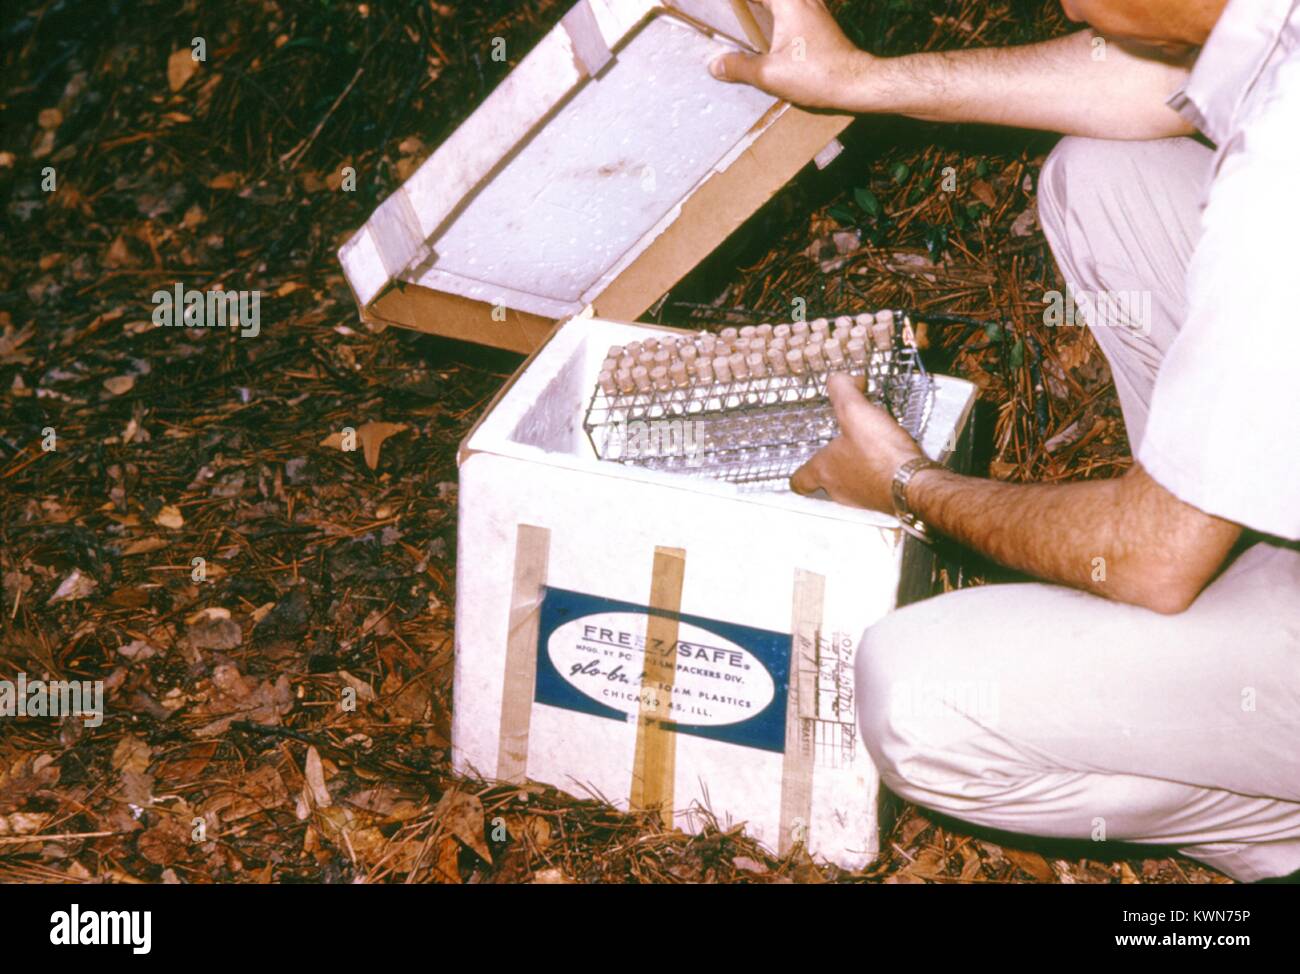 Questi campioni di sangue raccolti da vertebrati durante un arbovirus studio sul campo vengono memorizzati su ghiaccio, 1974. Questi campioni saranno trasportati indietro al laboratorio dove verranno testati per la presenza di arbovirus in sospetto di popolazioni di animali per animali, come gli esseri umani possono essere infettati con l'arbovirus artropodi-virus vettori del cuscinetto. Immagine cortesia CDC. Foto Stock